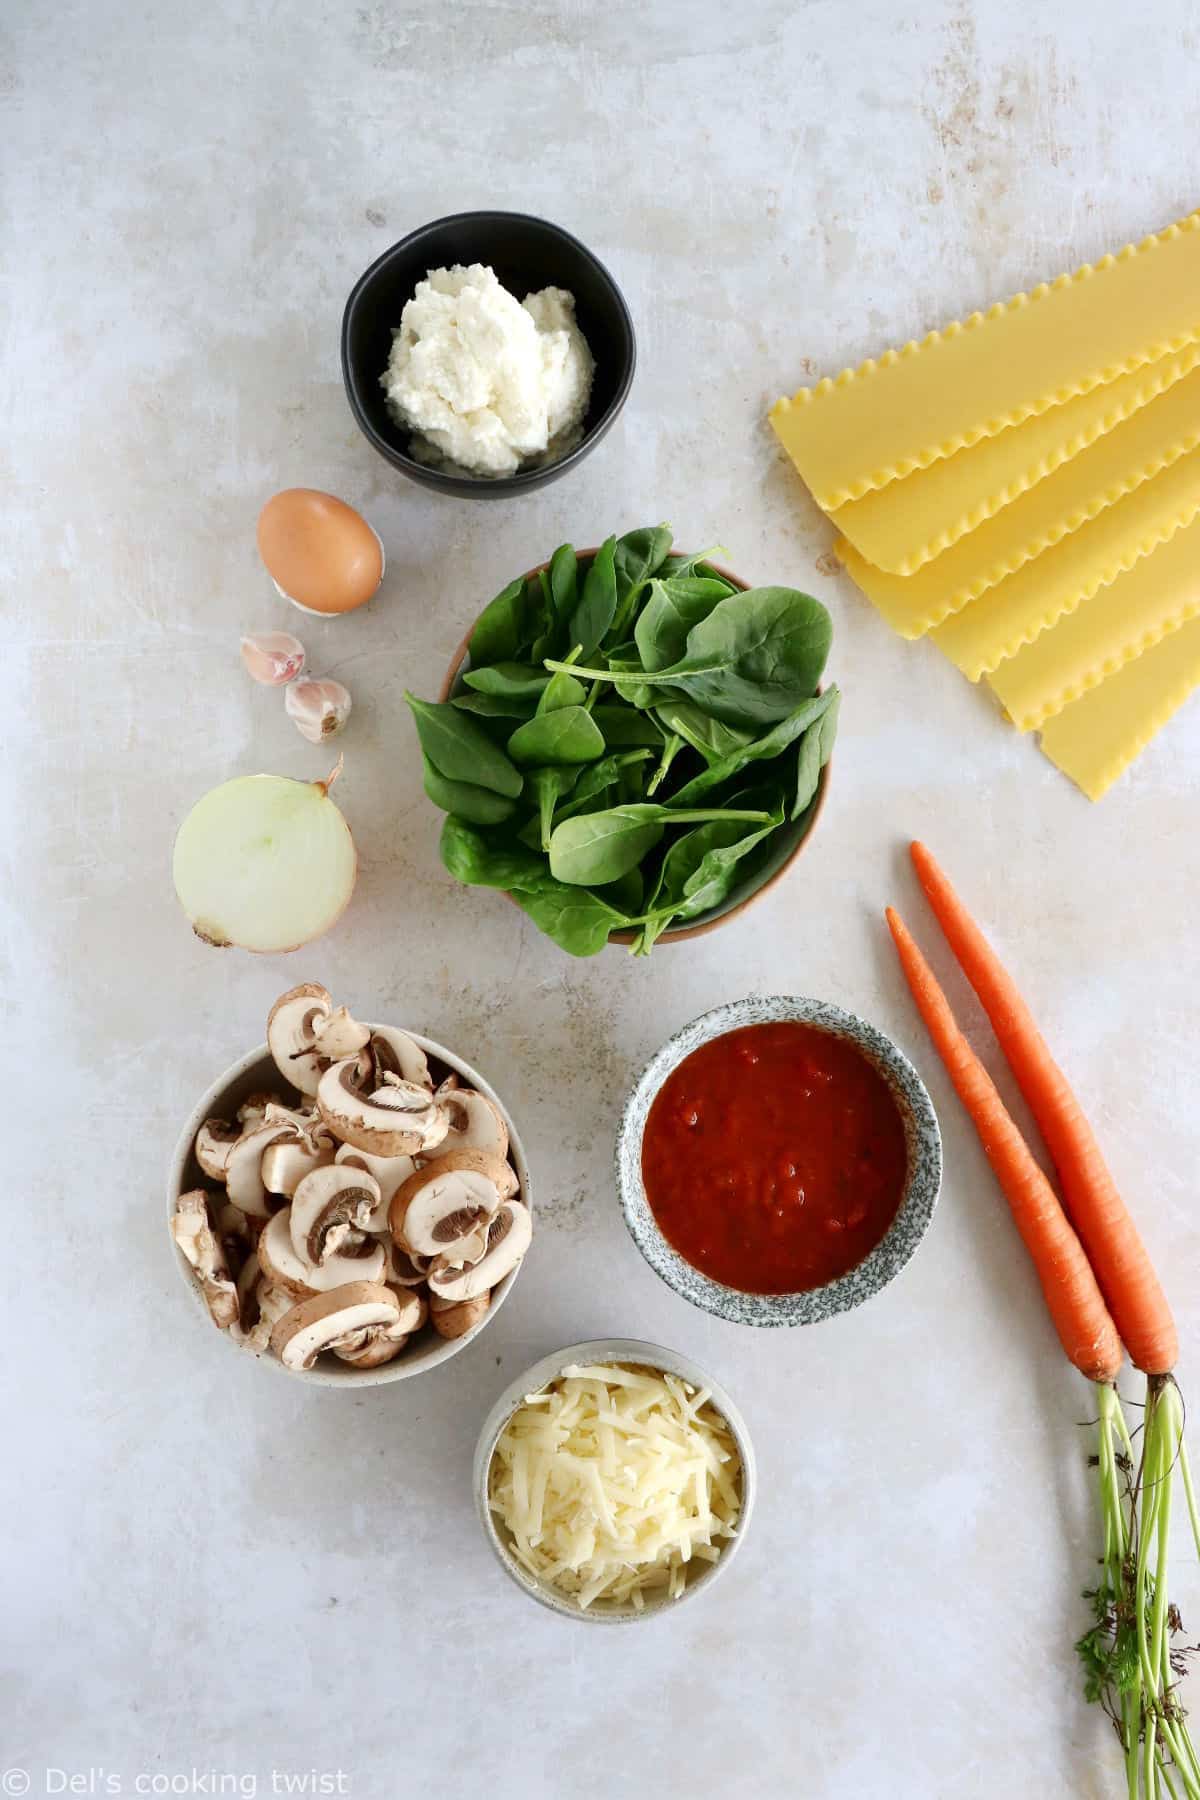 Ces lasagnes aux épinards, champignons et ricotta sont de délicieuses lasagnes végétariennes maison.